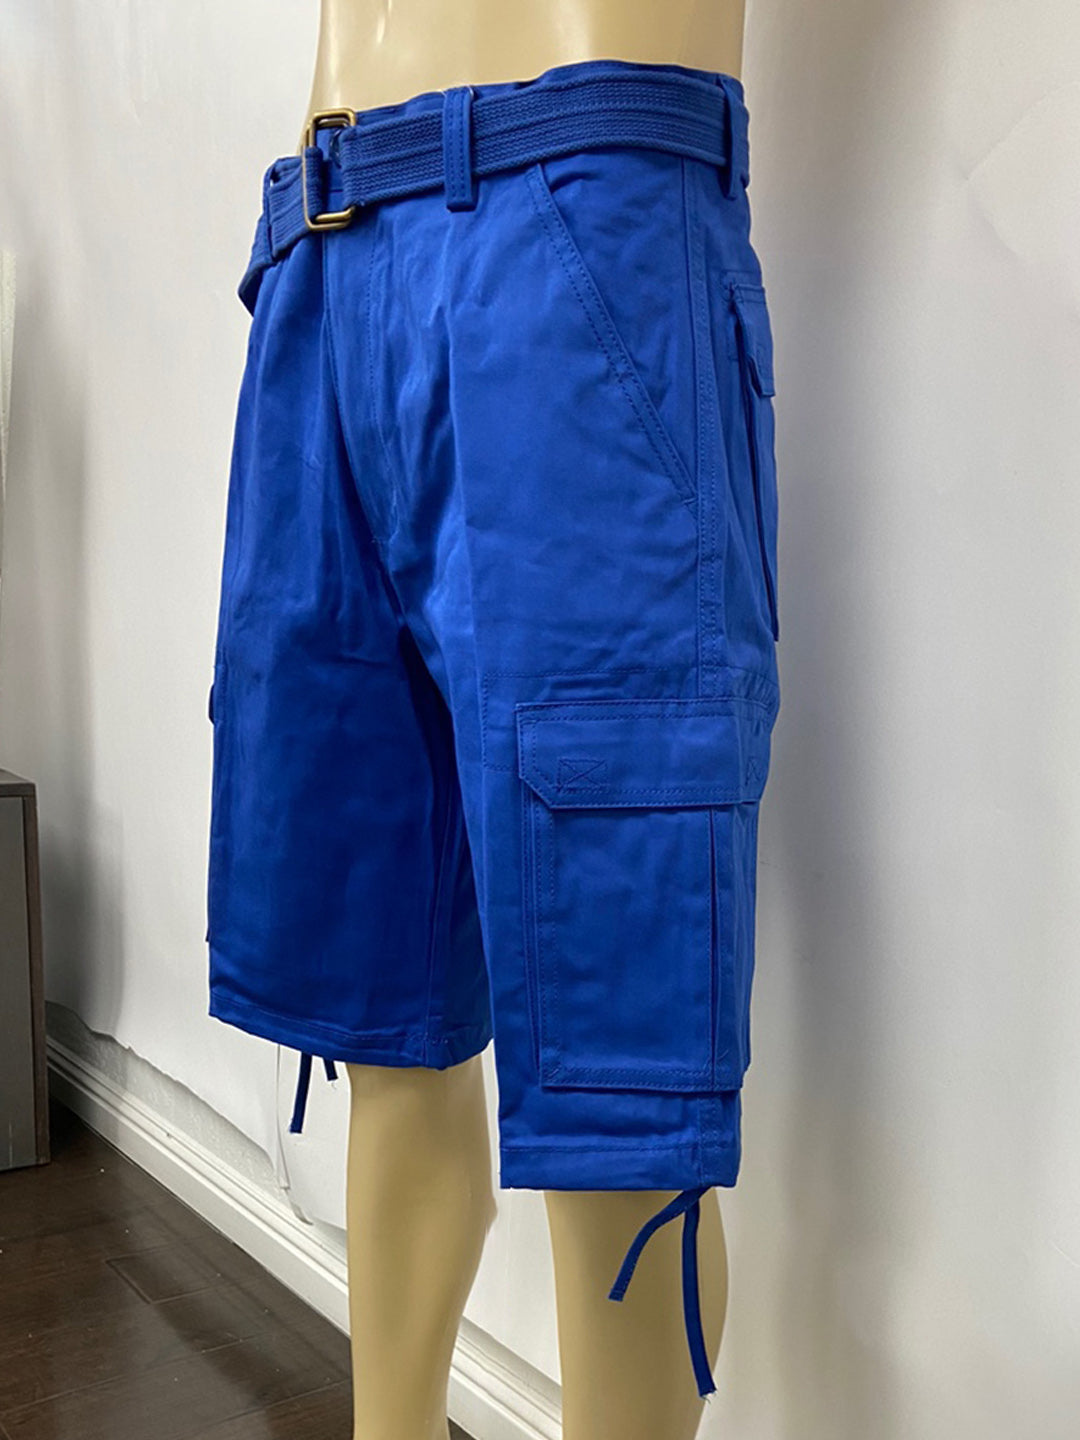 Cargo Shorts with Adjustable Twill Belt Utility Pocket - Royal Blue